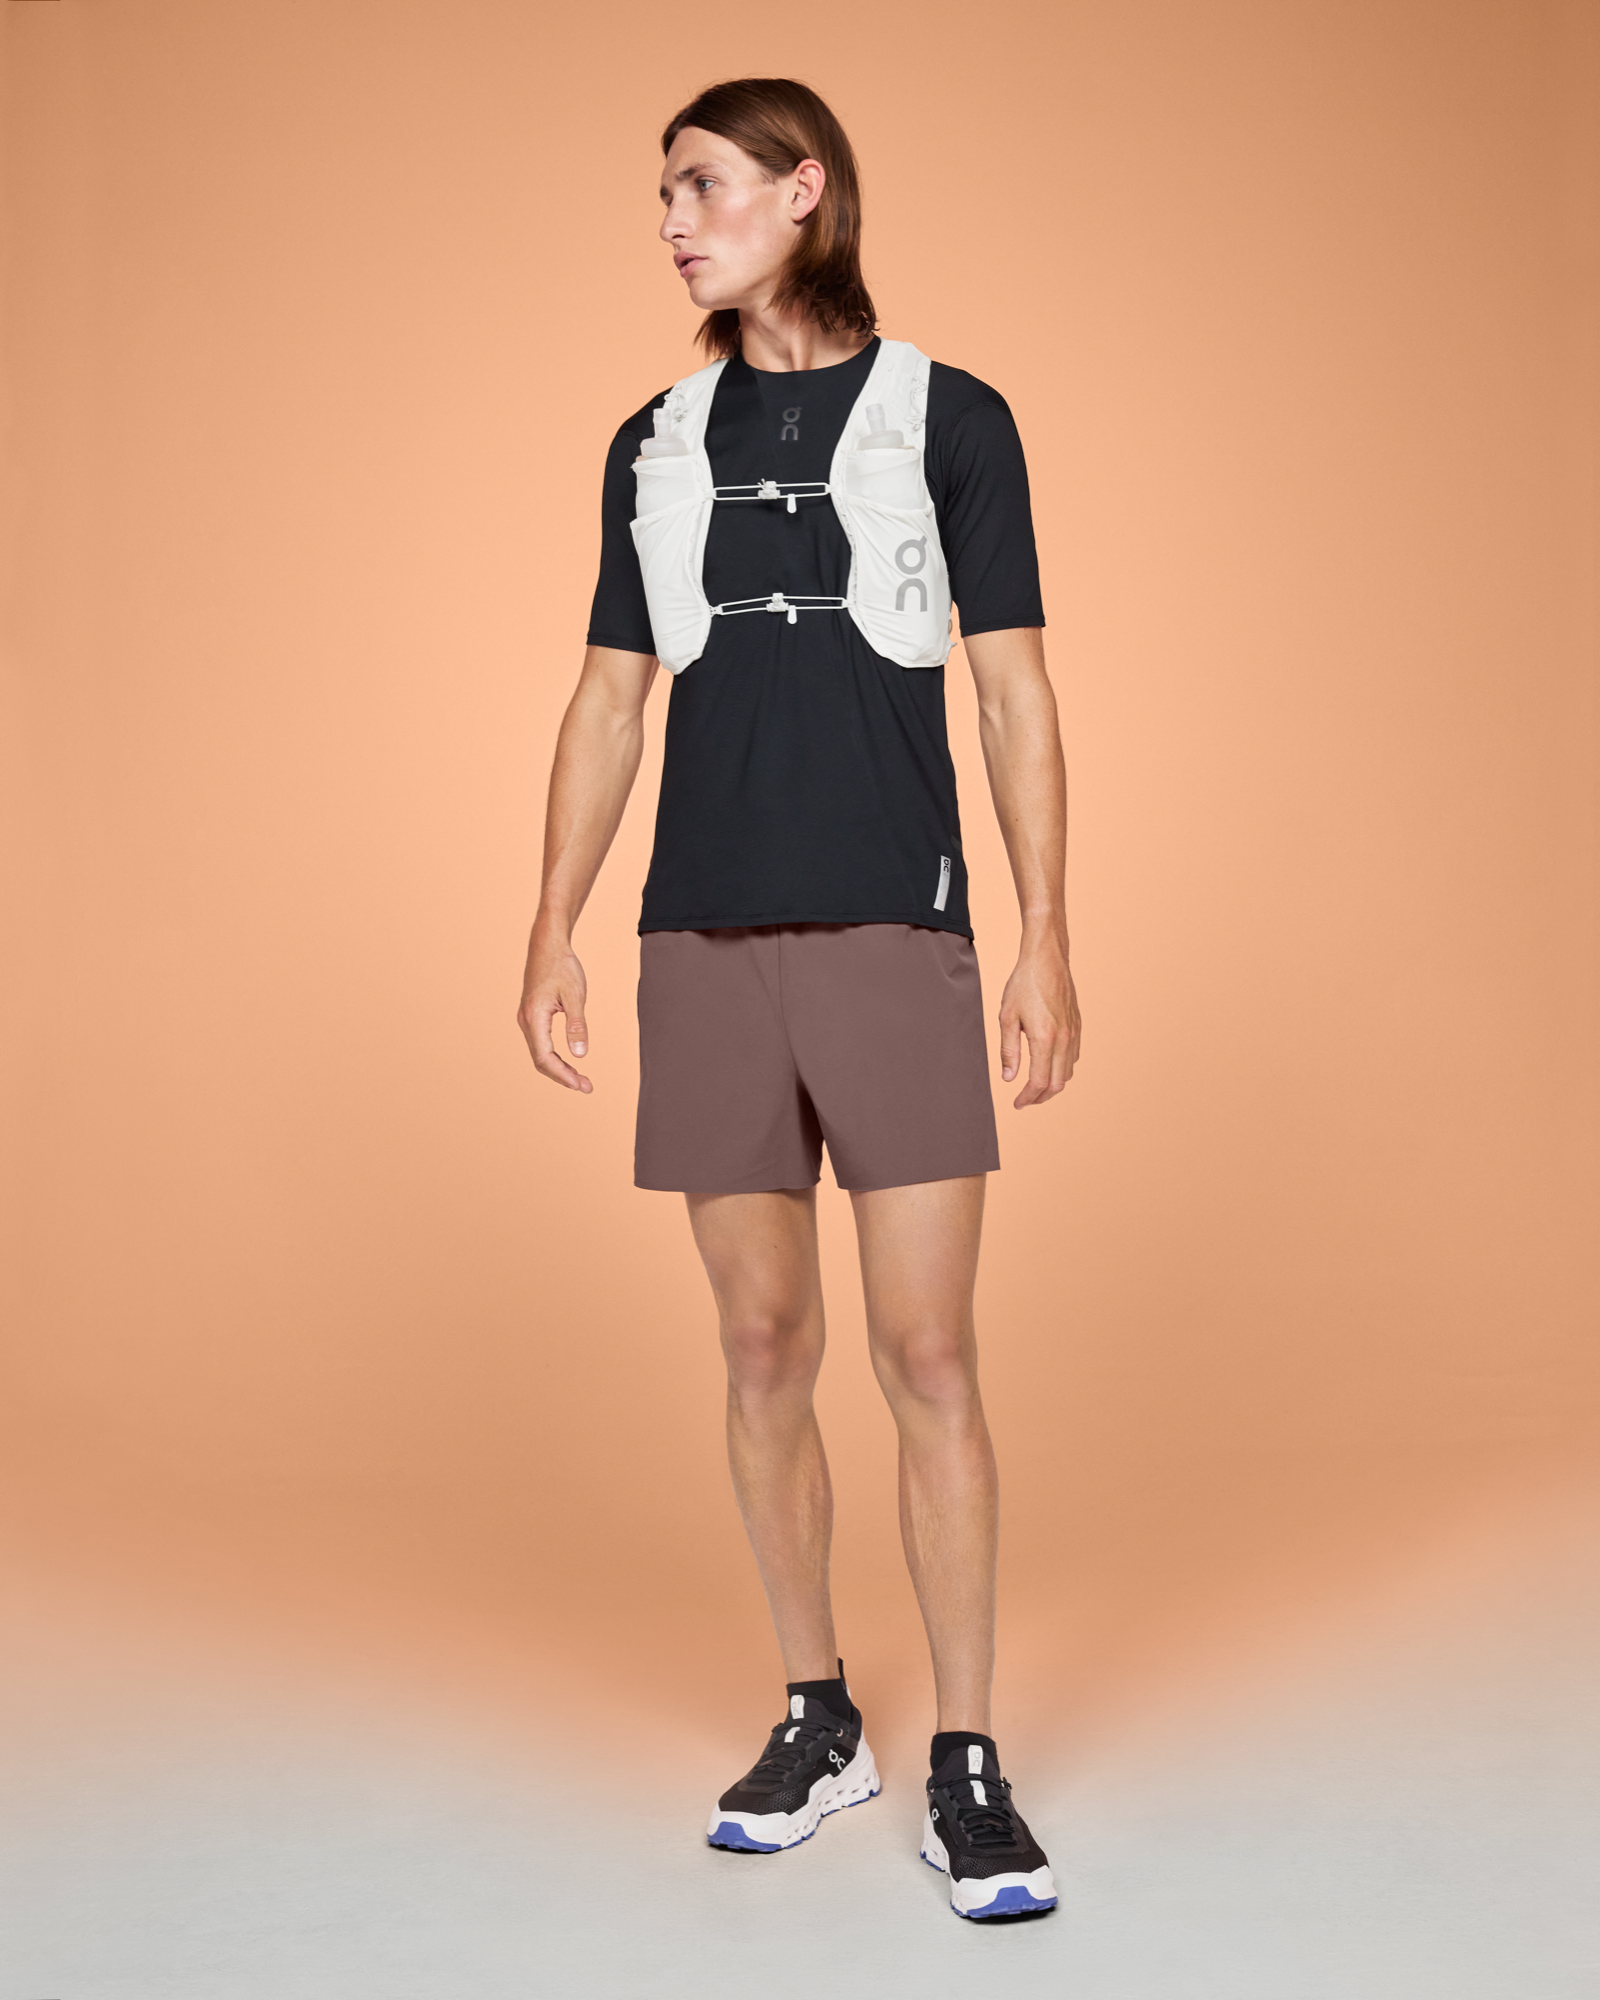 Ultra Vest 5L : gilet de trail running ultra-léger